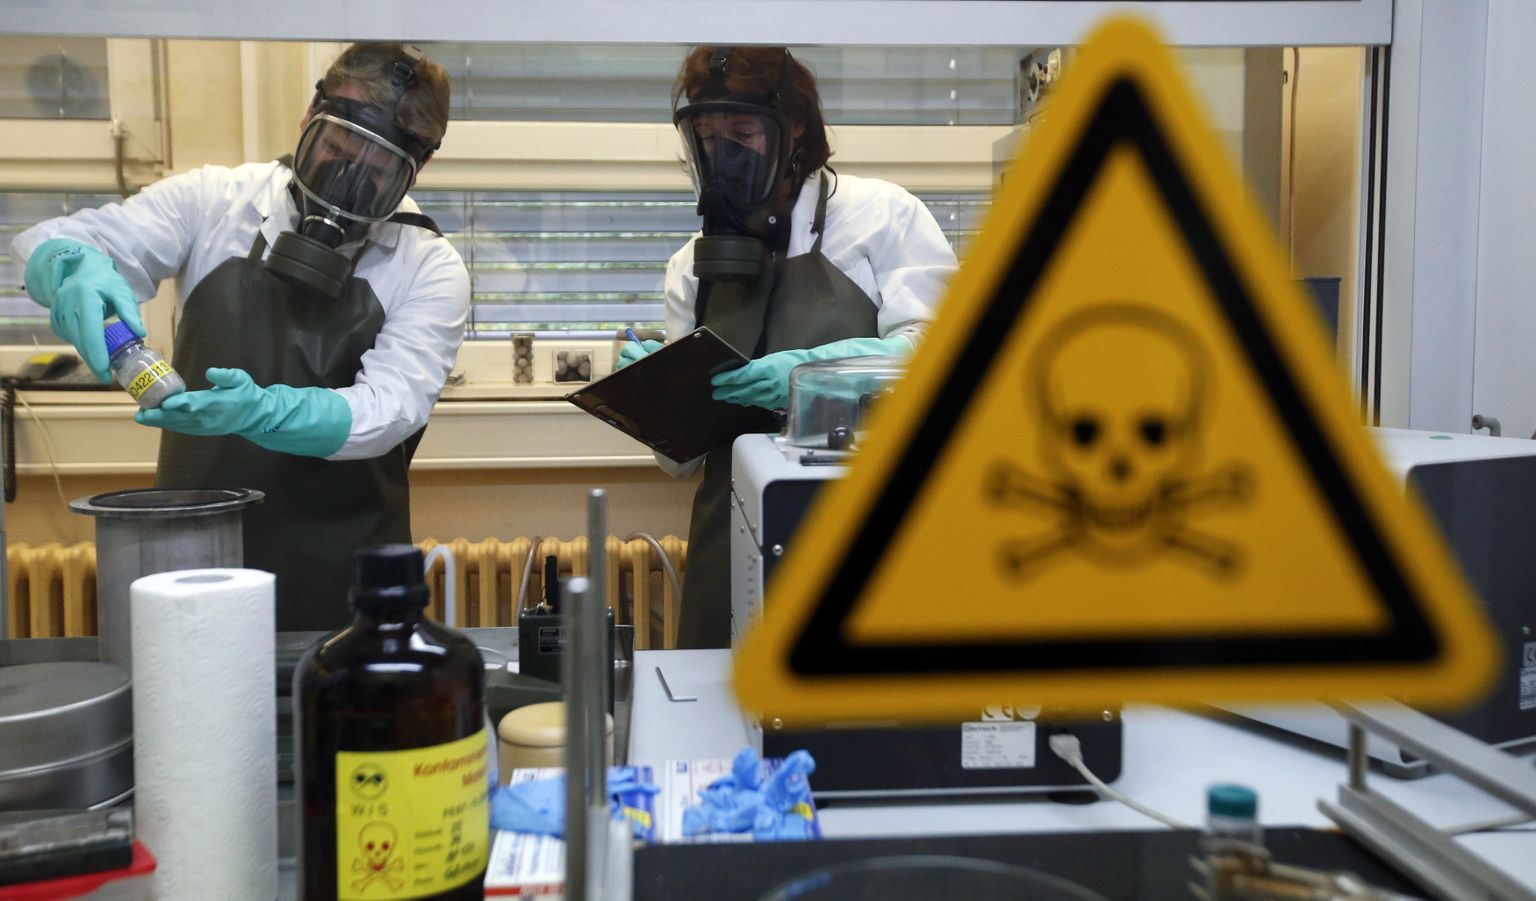 Сотрудники Научно-исследовательского института защитных технологий, ядерной, биологической и химической защиты (WIS) осматривают загрязненный образец. WIS - лаборатория Организации по запрещению химического оружия (ОЗХО).